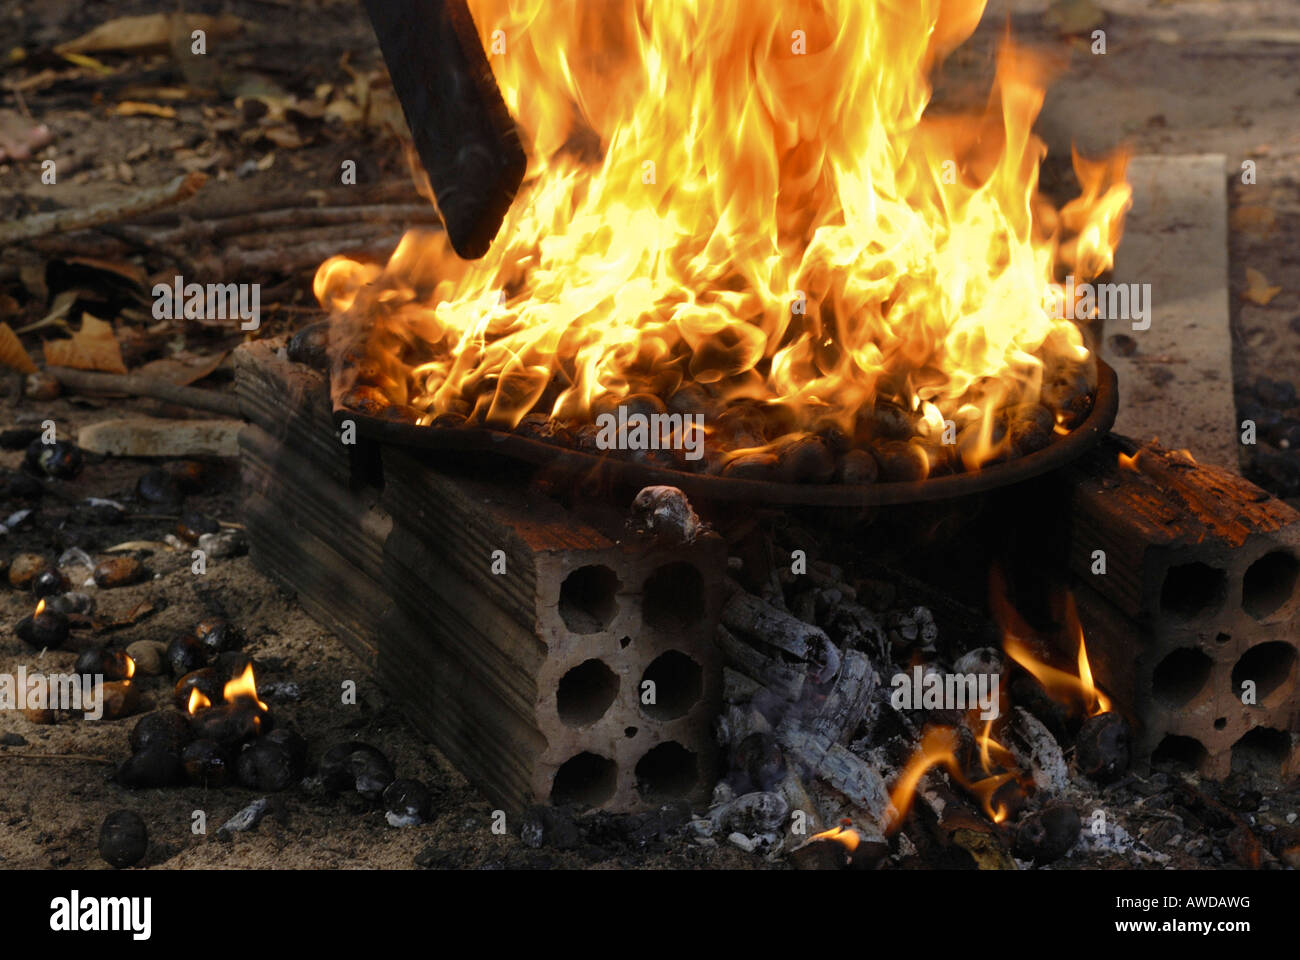 Toasten von Cashew-Nüssen auf offenem Feuer, Amazonien, Brasilien Stockfoto